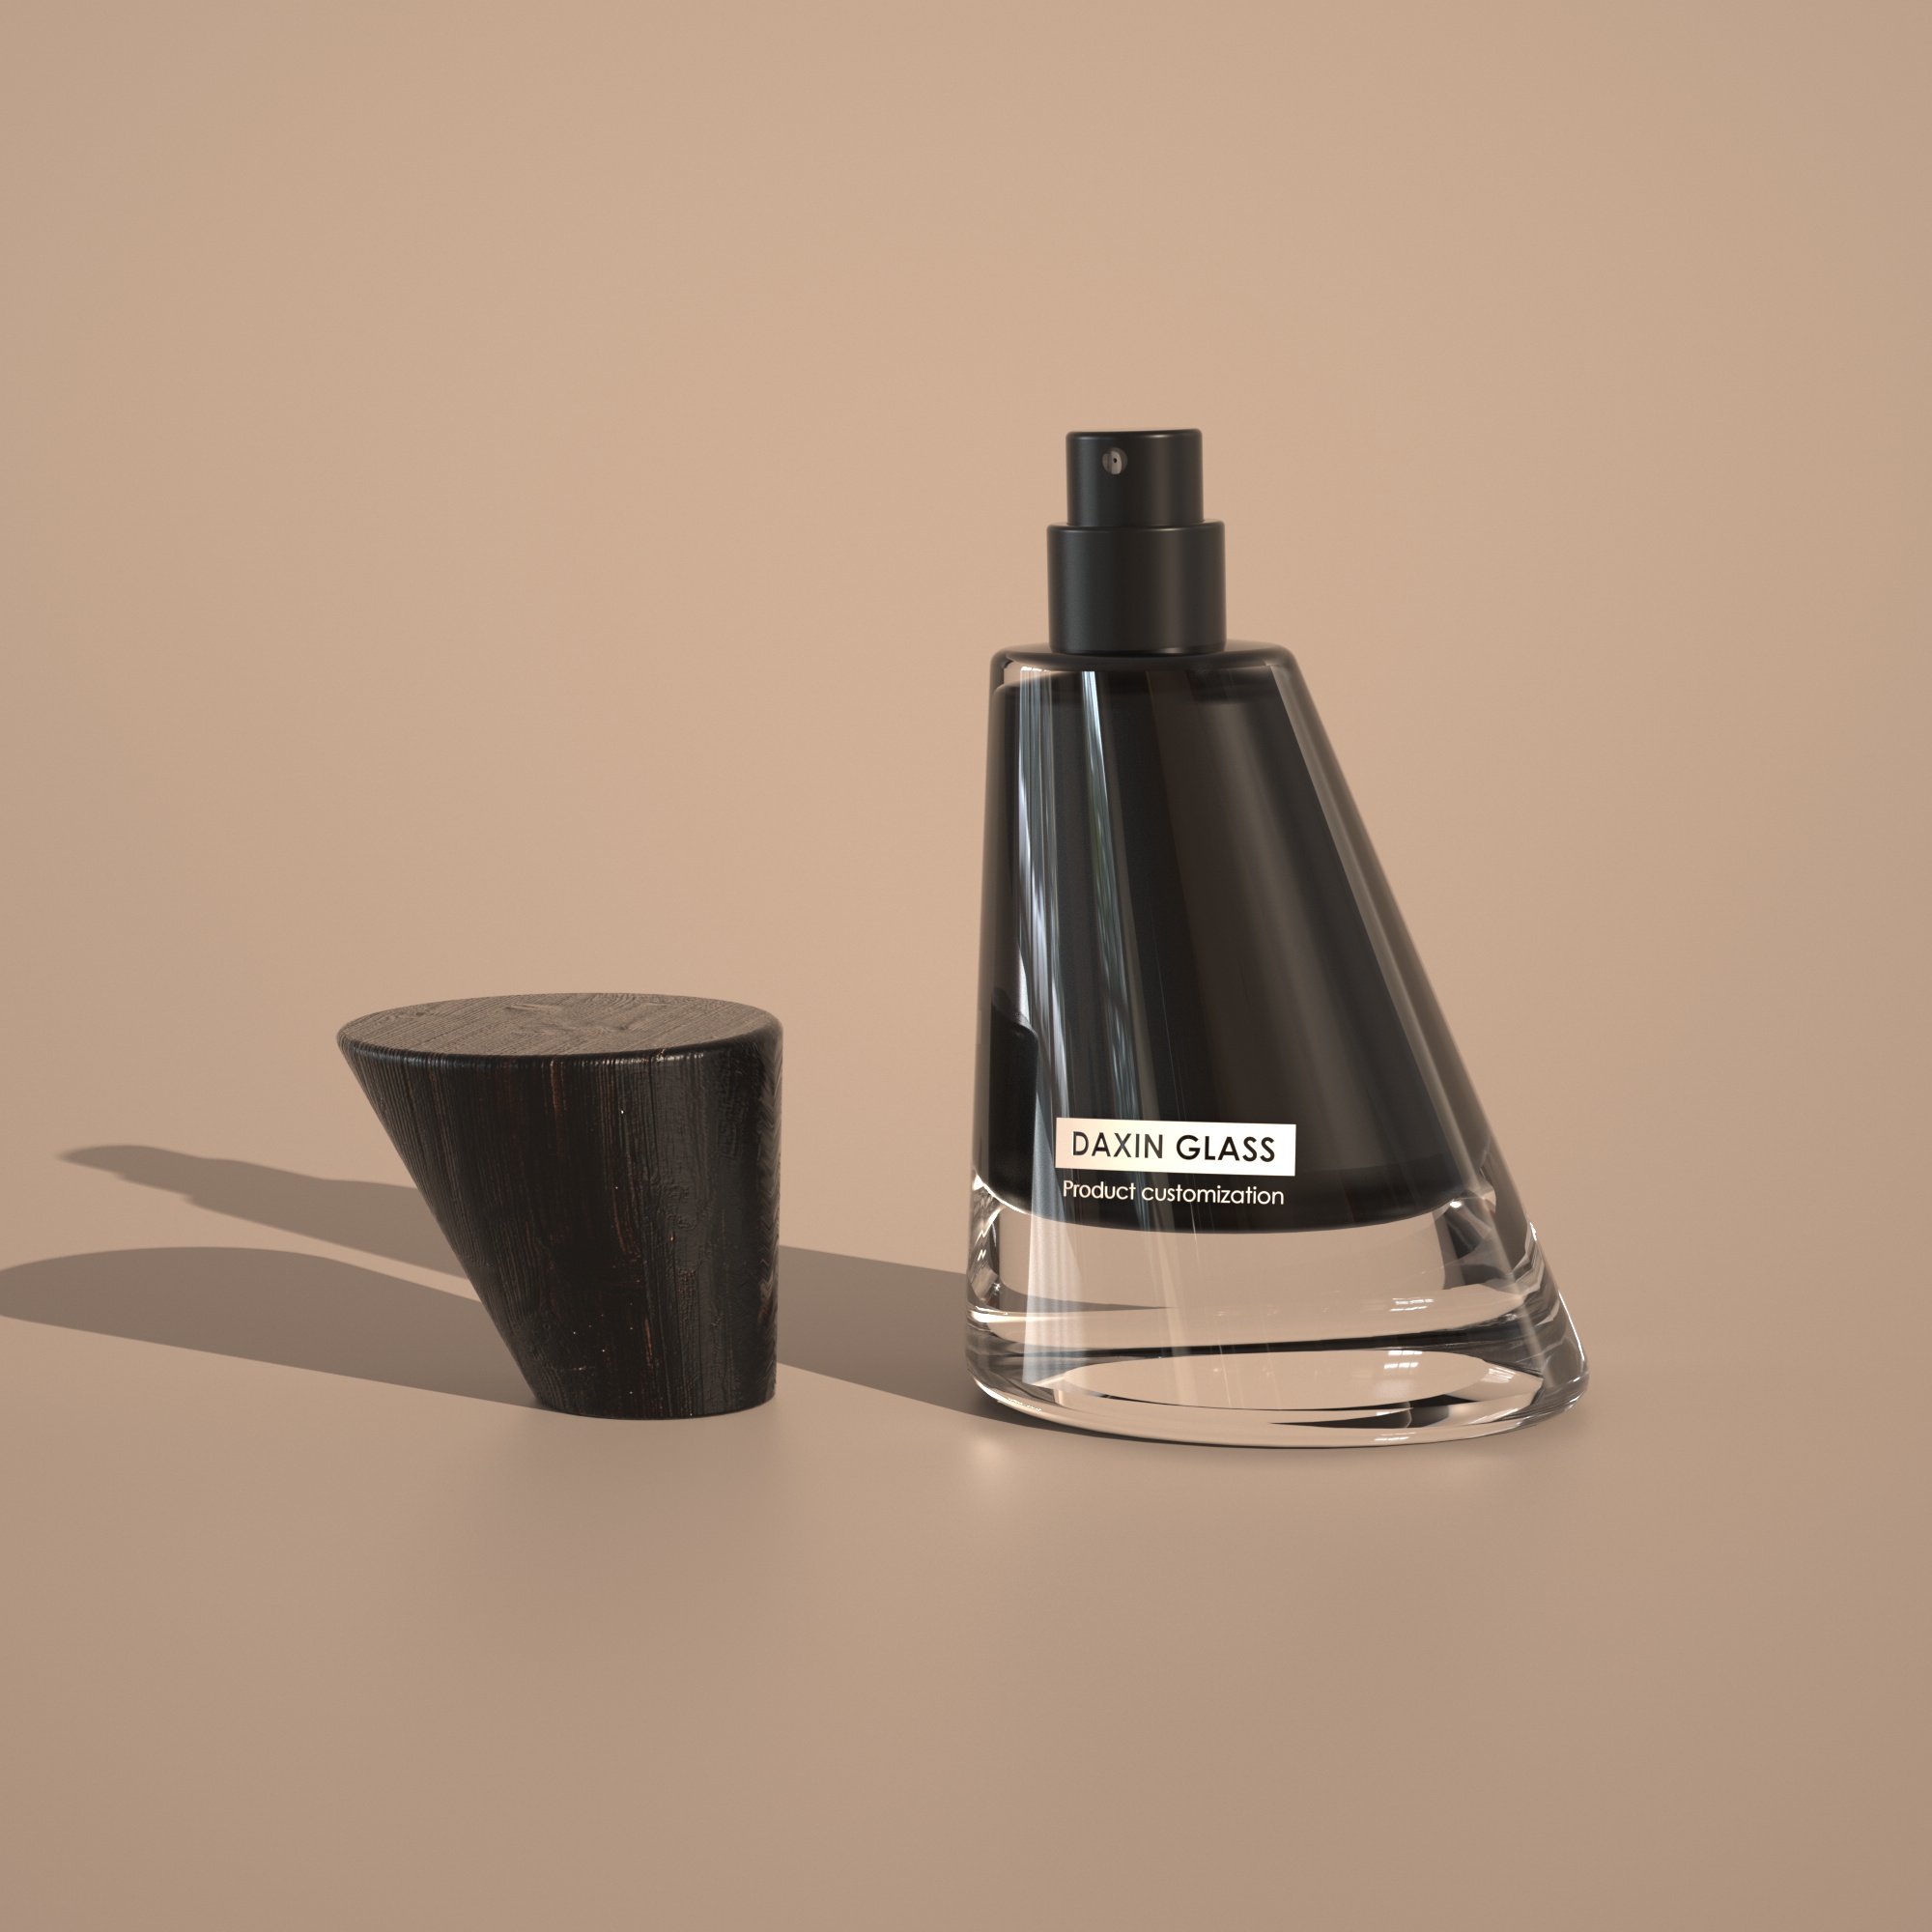 100ml black perfume bottle